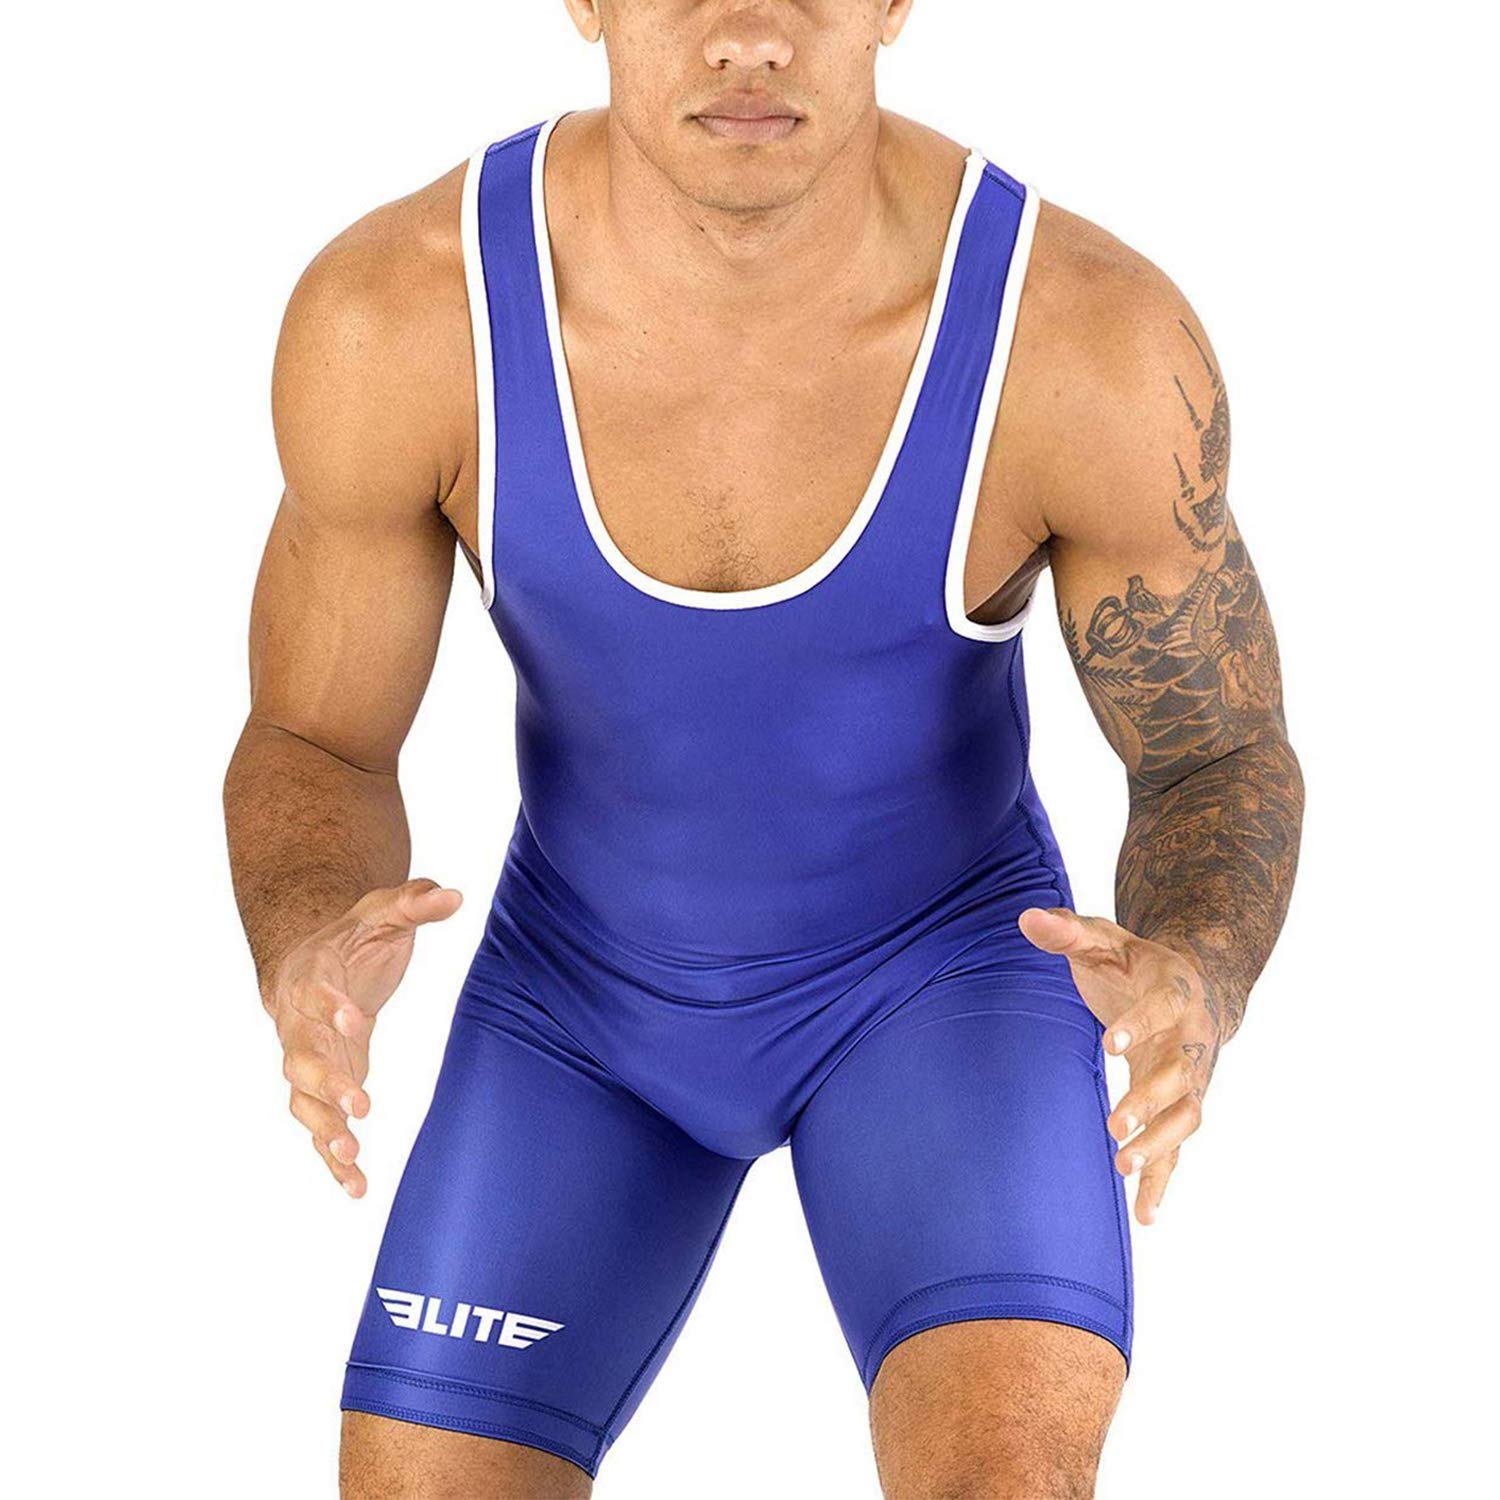 Elite Sports Menas Wrestling Singlets, Standard Singlet For Men Wrestling Uniform (Blue, X-Large)